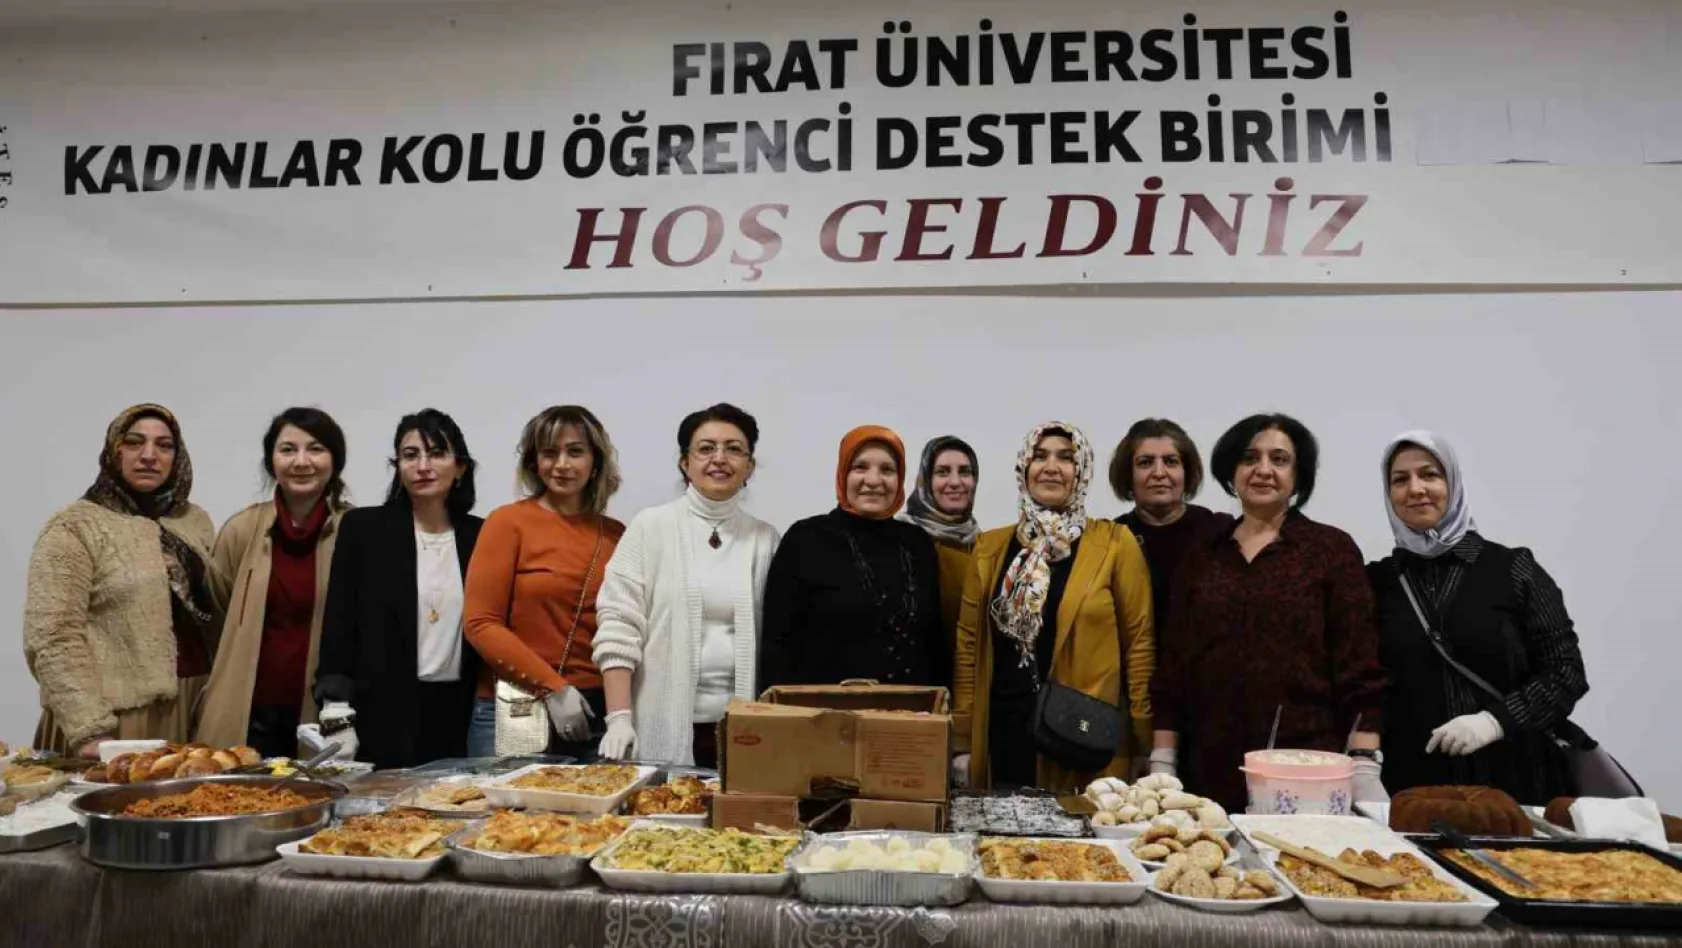 Fırat Üniversitesinden sınav heyecanına 'lezzetli' destek